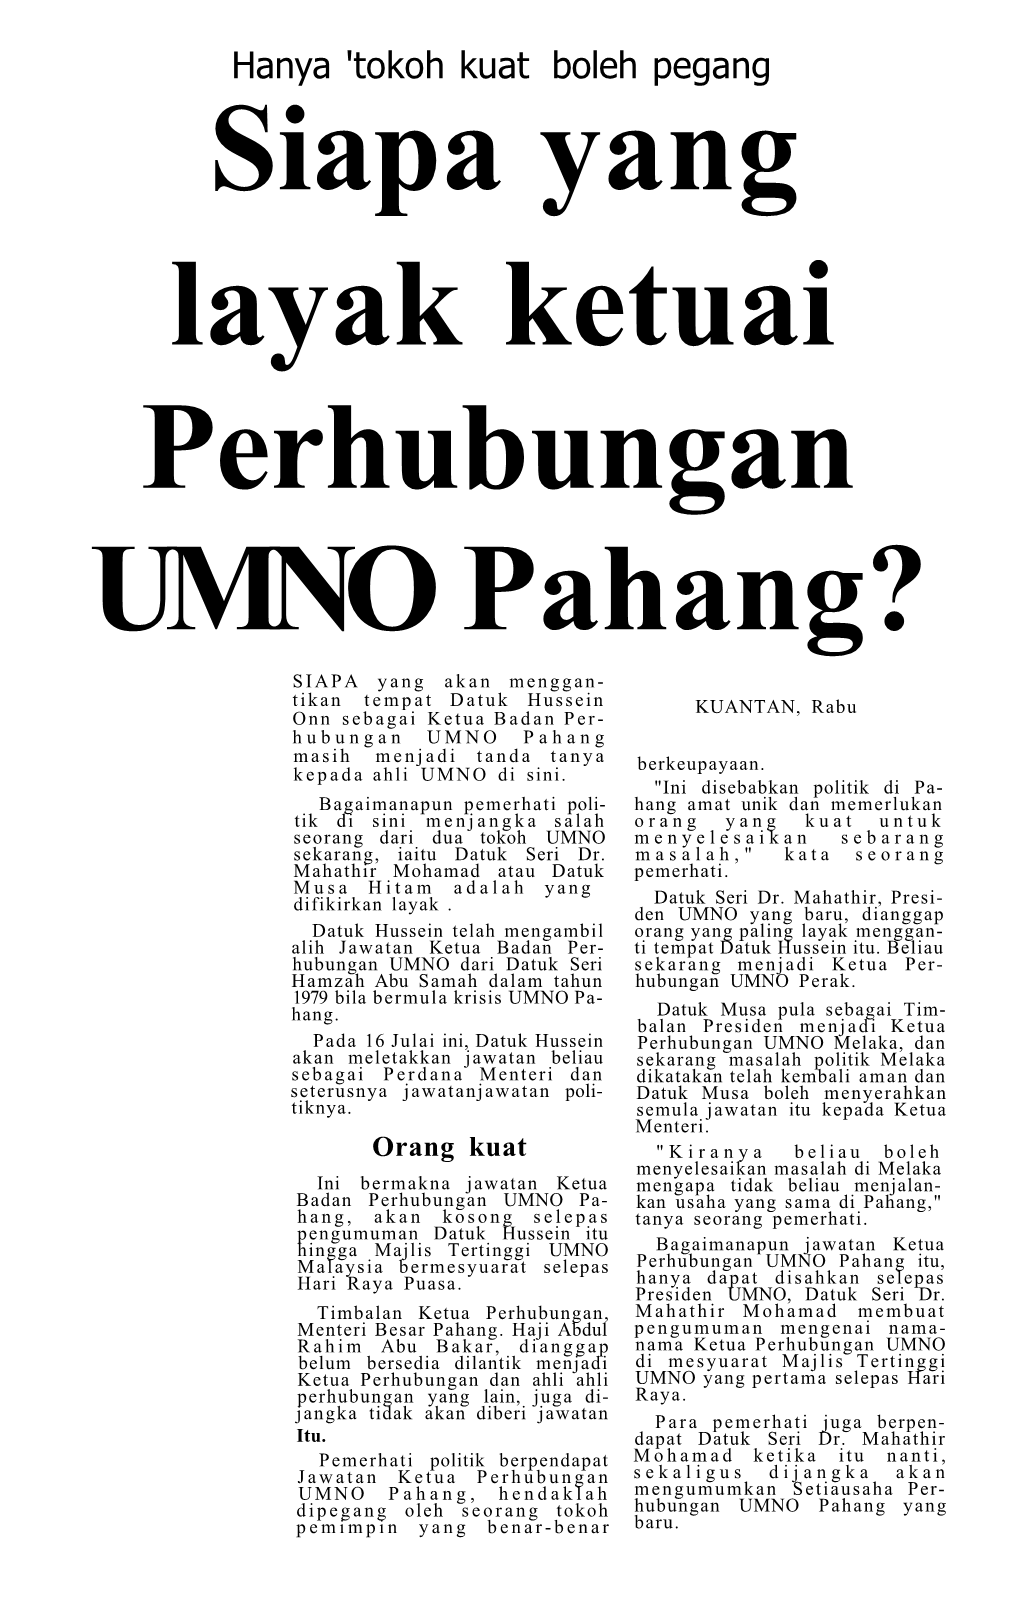 Siapa Yang Layak Ketuai Perhubungan UMNO Pahang?